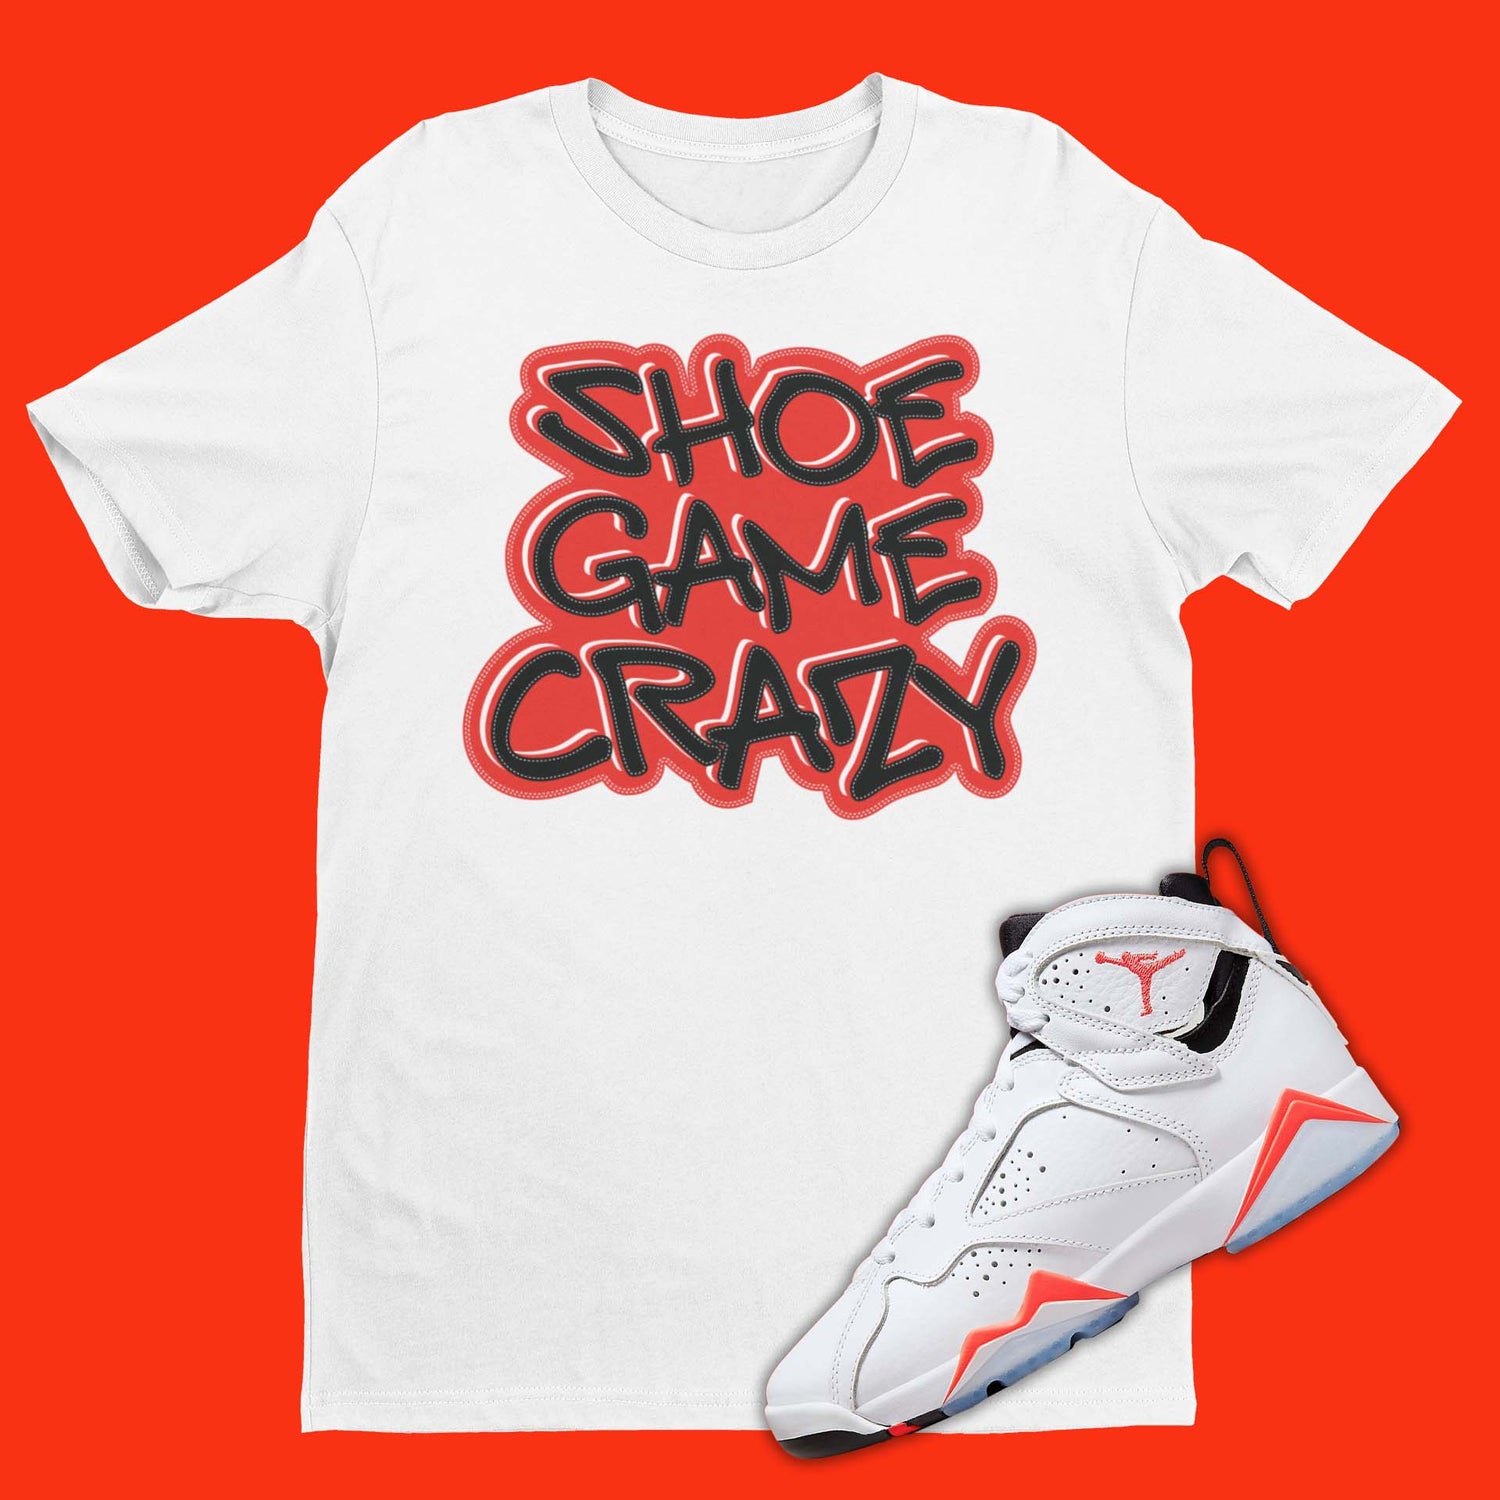 Shoe Game Crazy Shirt Matching Air Jordan 7 White Infrared